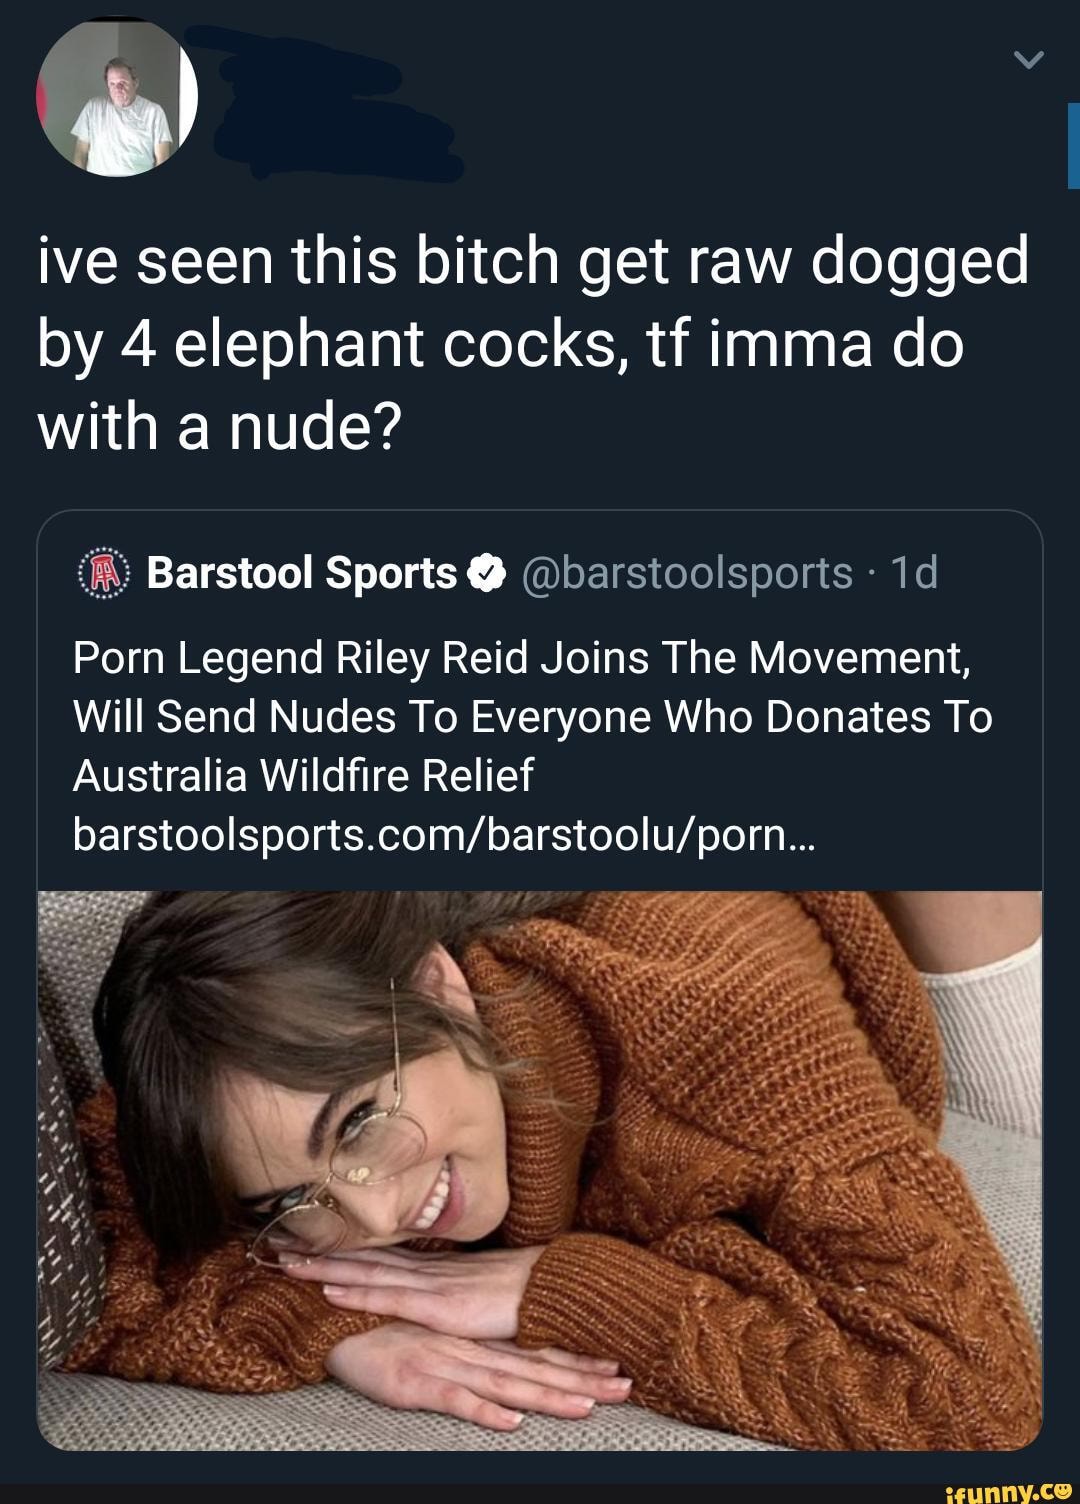 Send nudes bitch